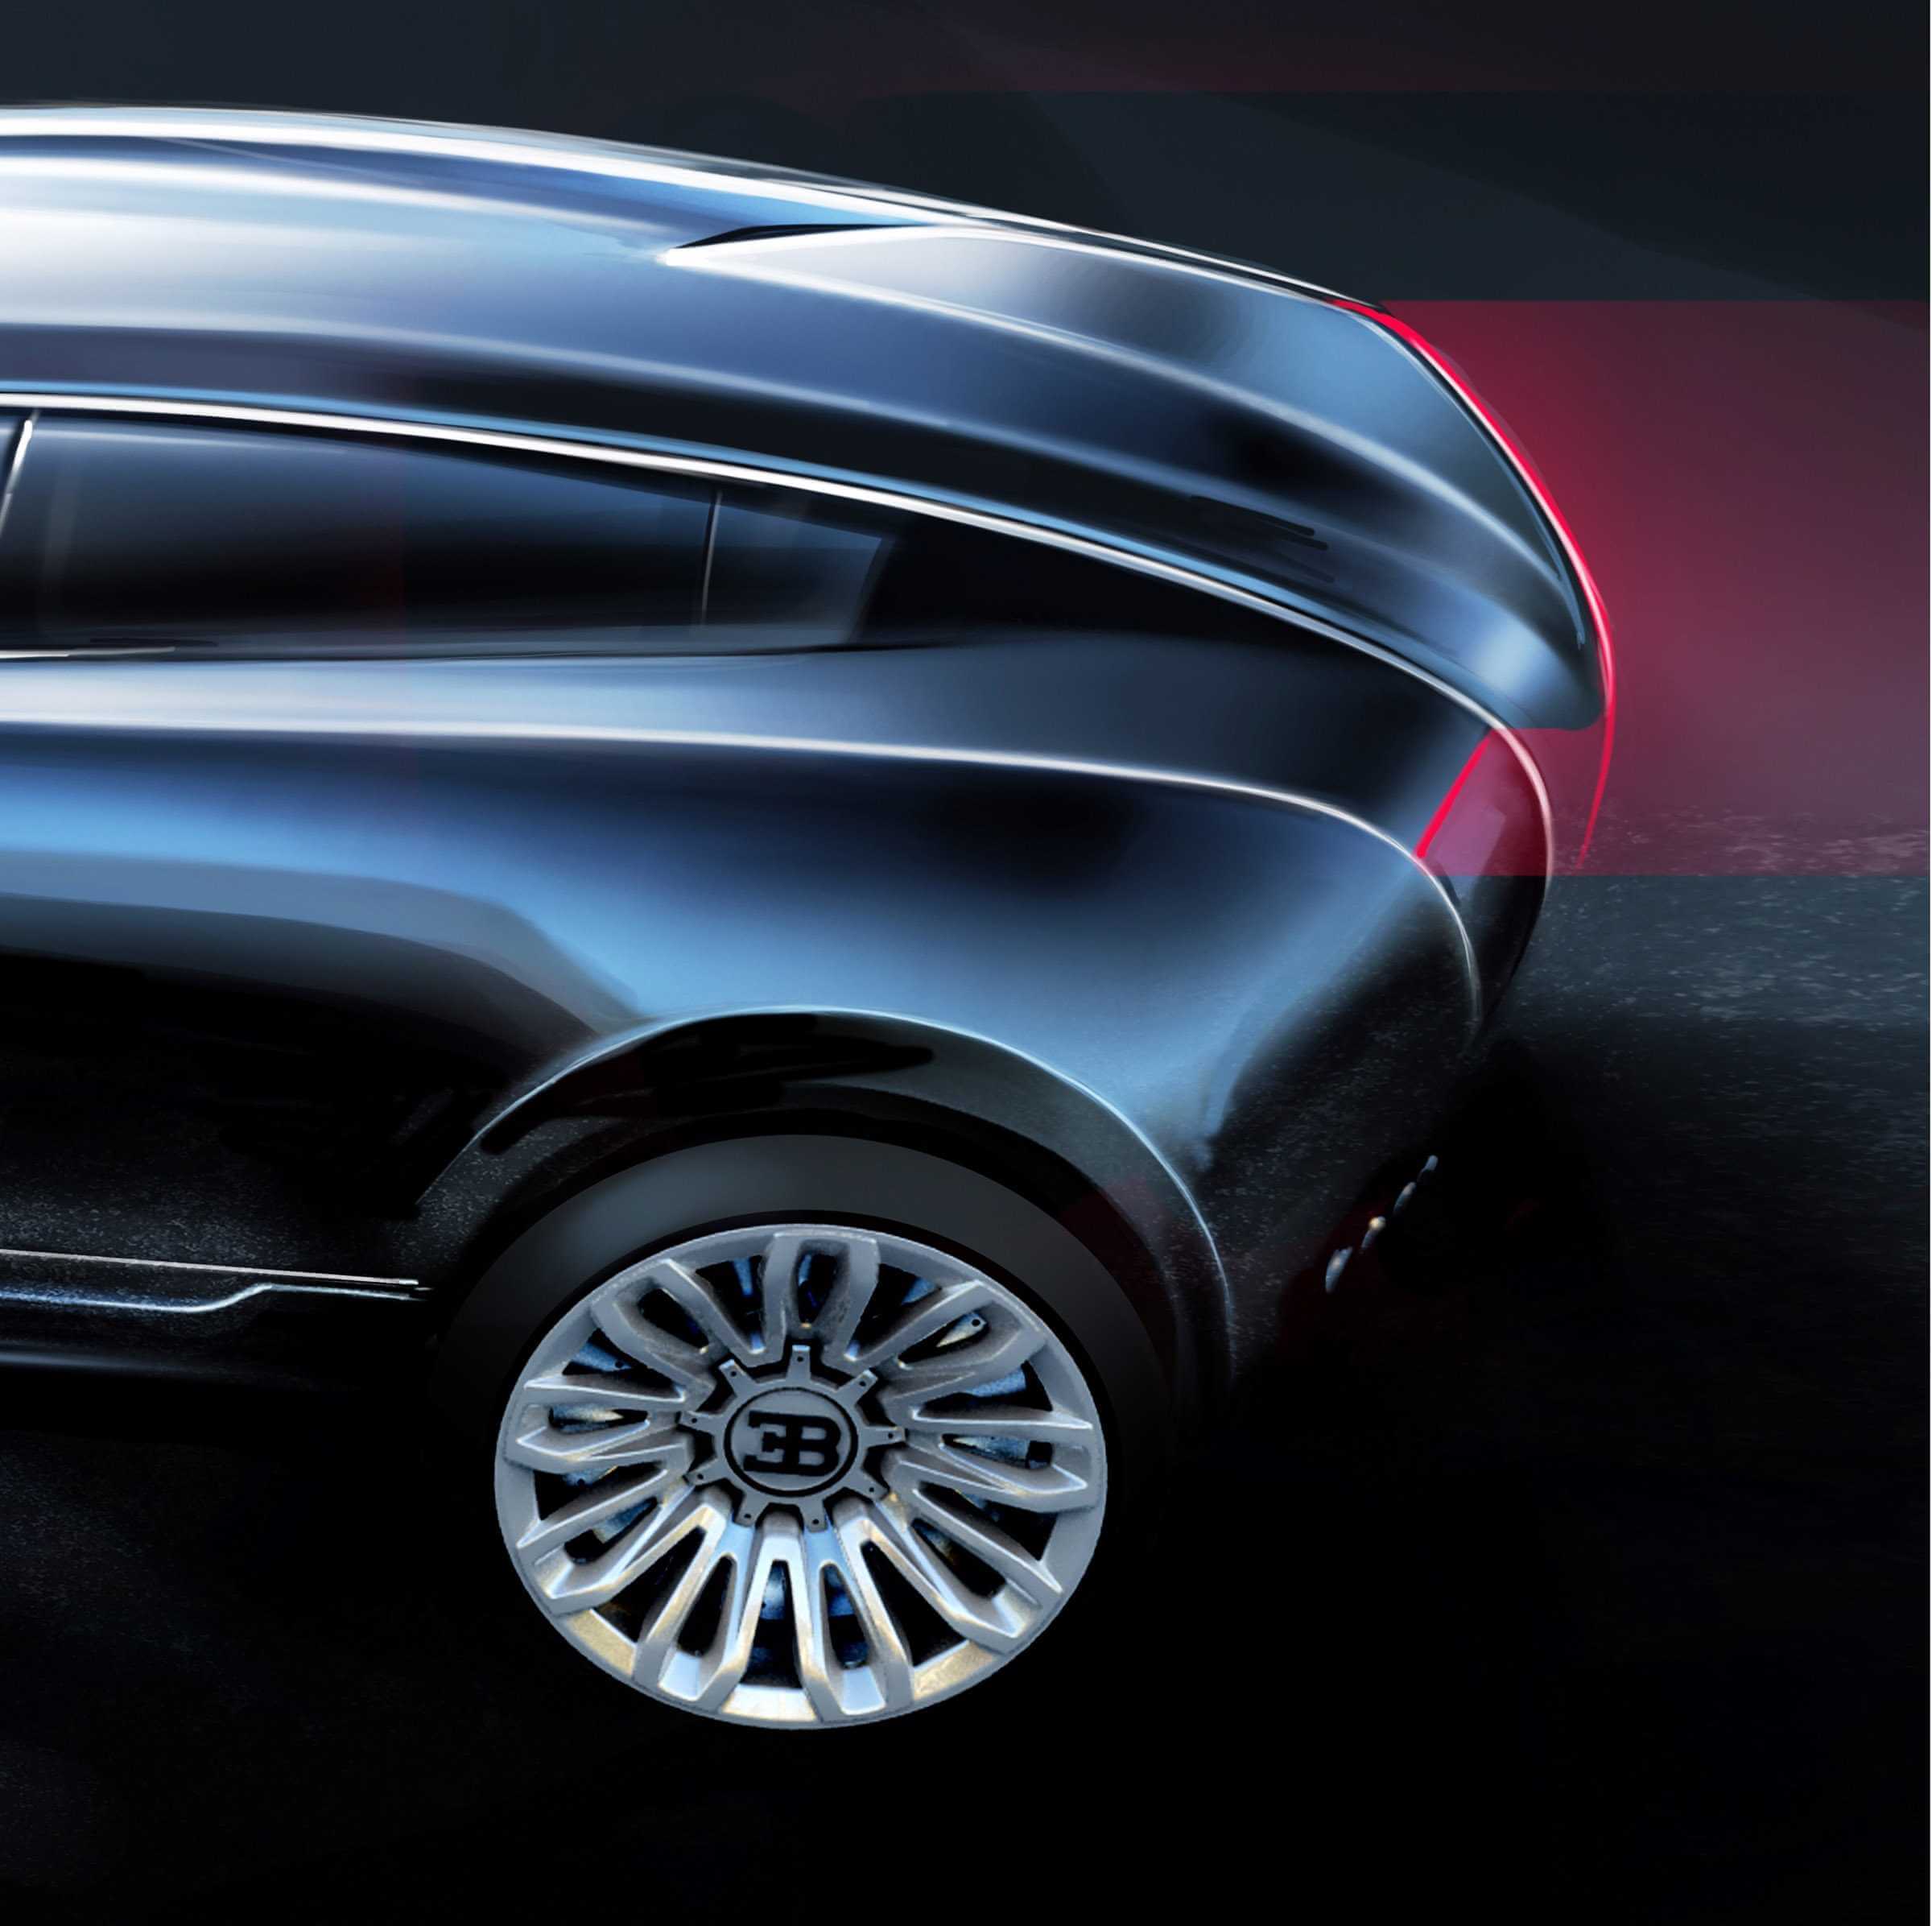 Bugatti SUV Design Concept by Ondrej Jirec